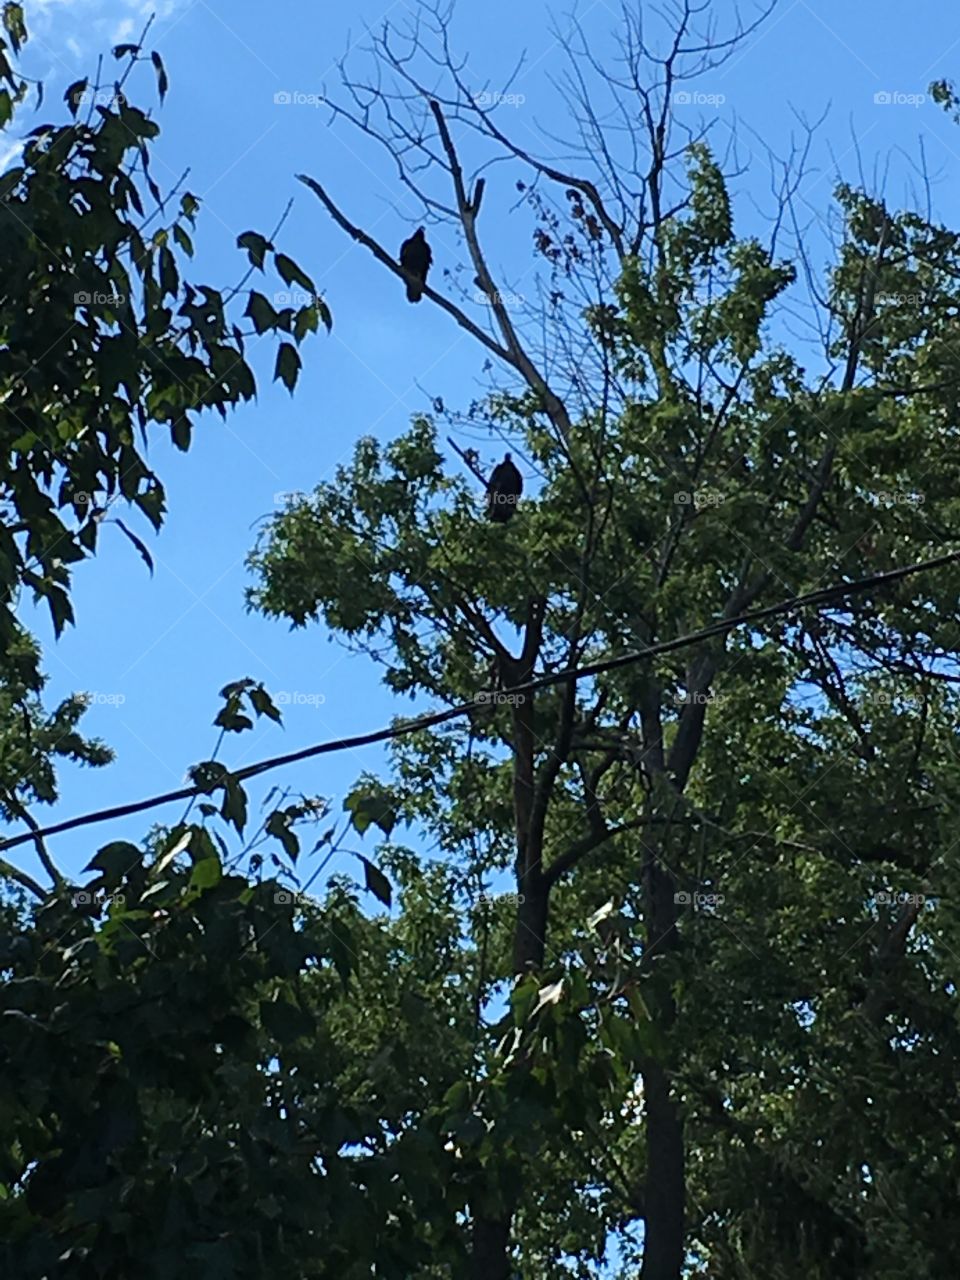 Falcon couple, in the tree, in Ohio. 